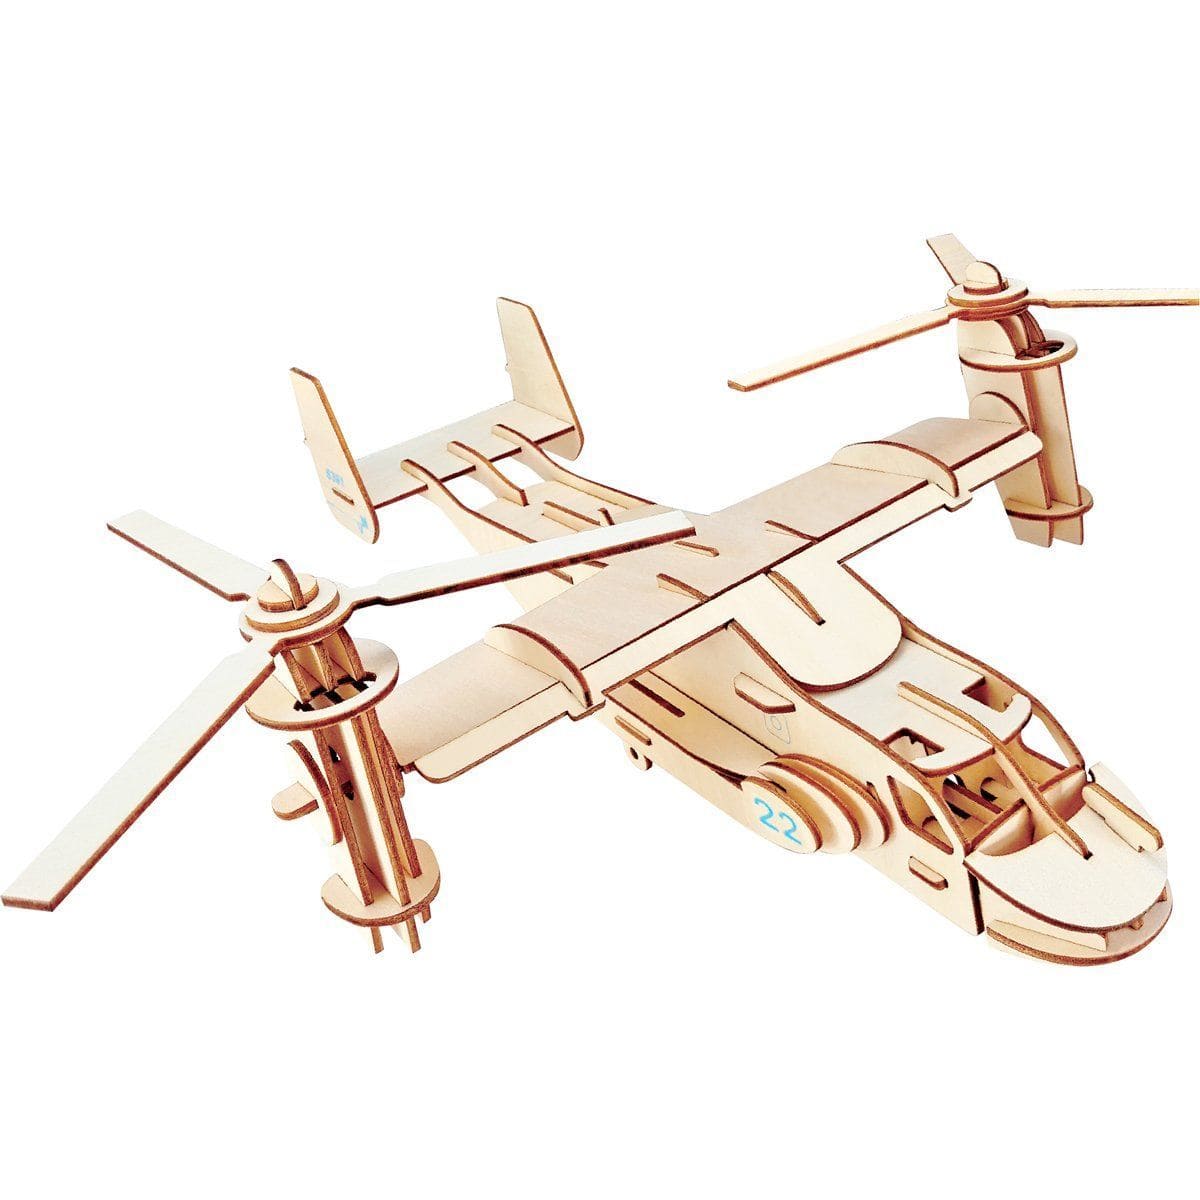 Pilot Toys V-22 Osprey 3D Puzzle